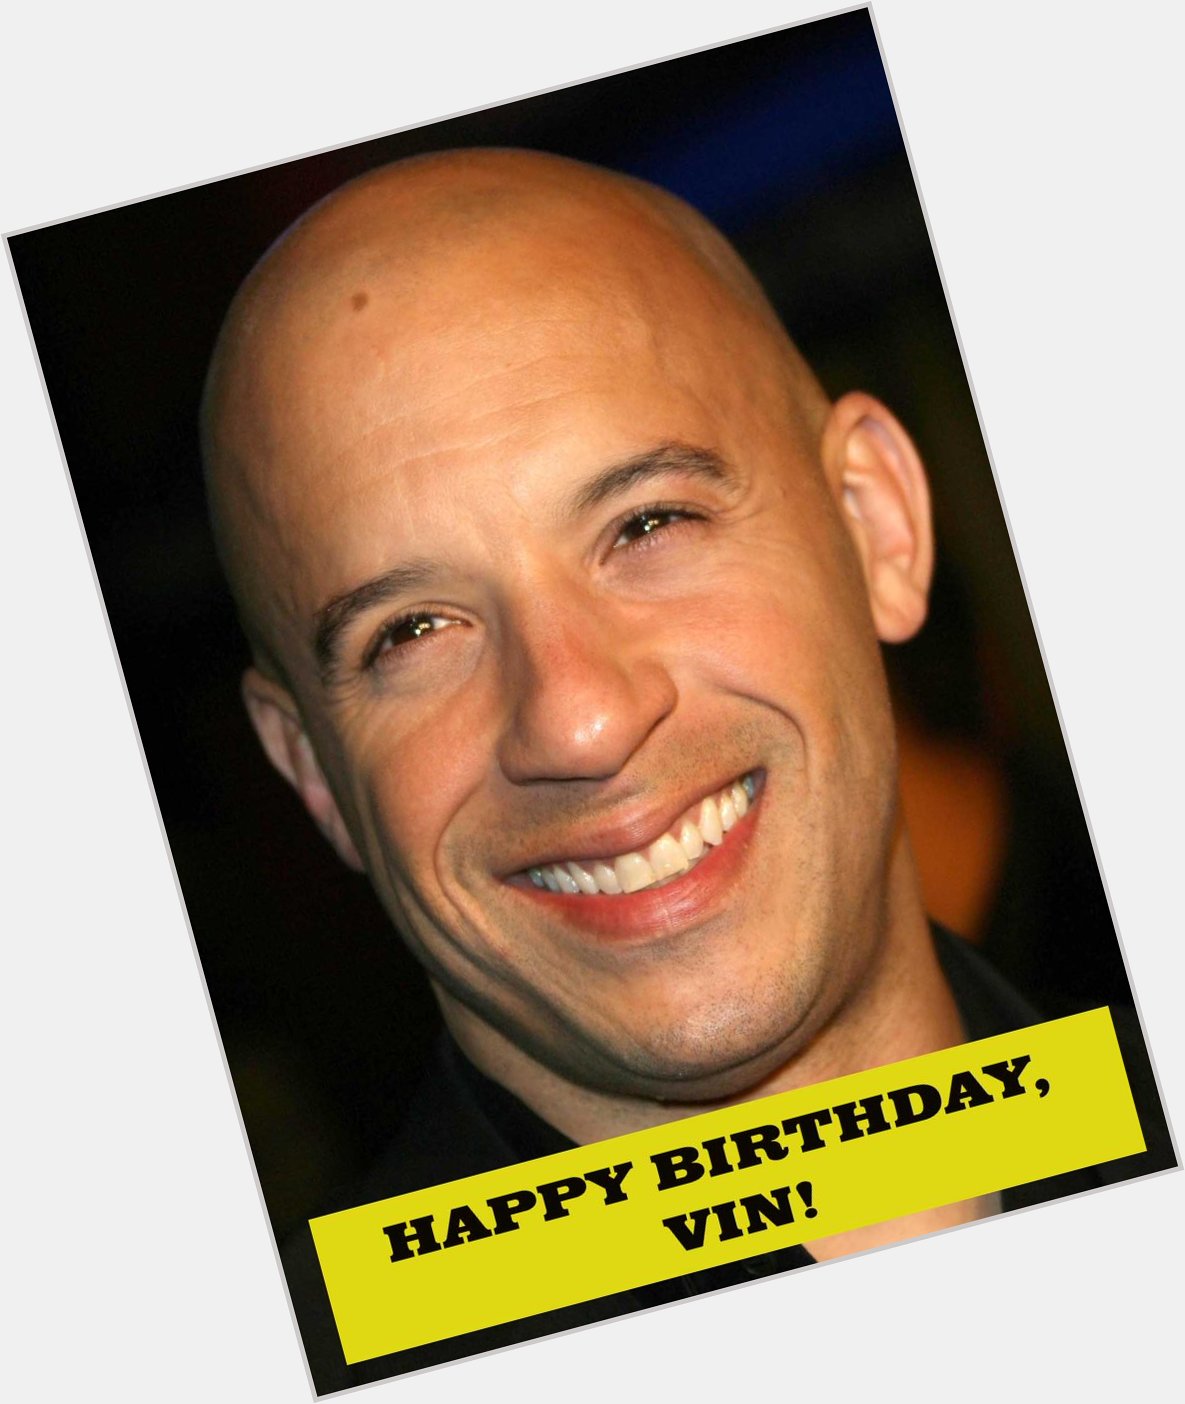 Happy Birthday to Mr. Fast & Furious himself, Vin Diesel! 